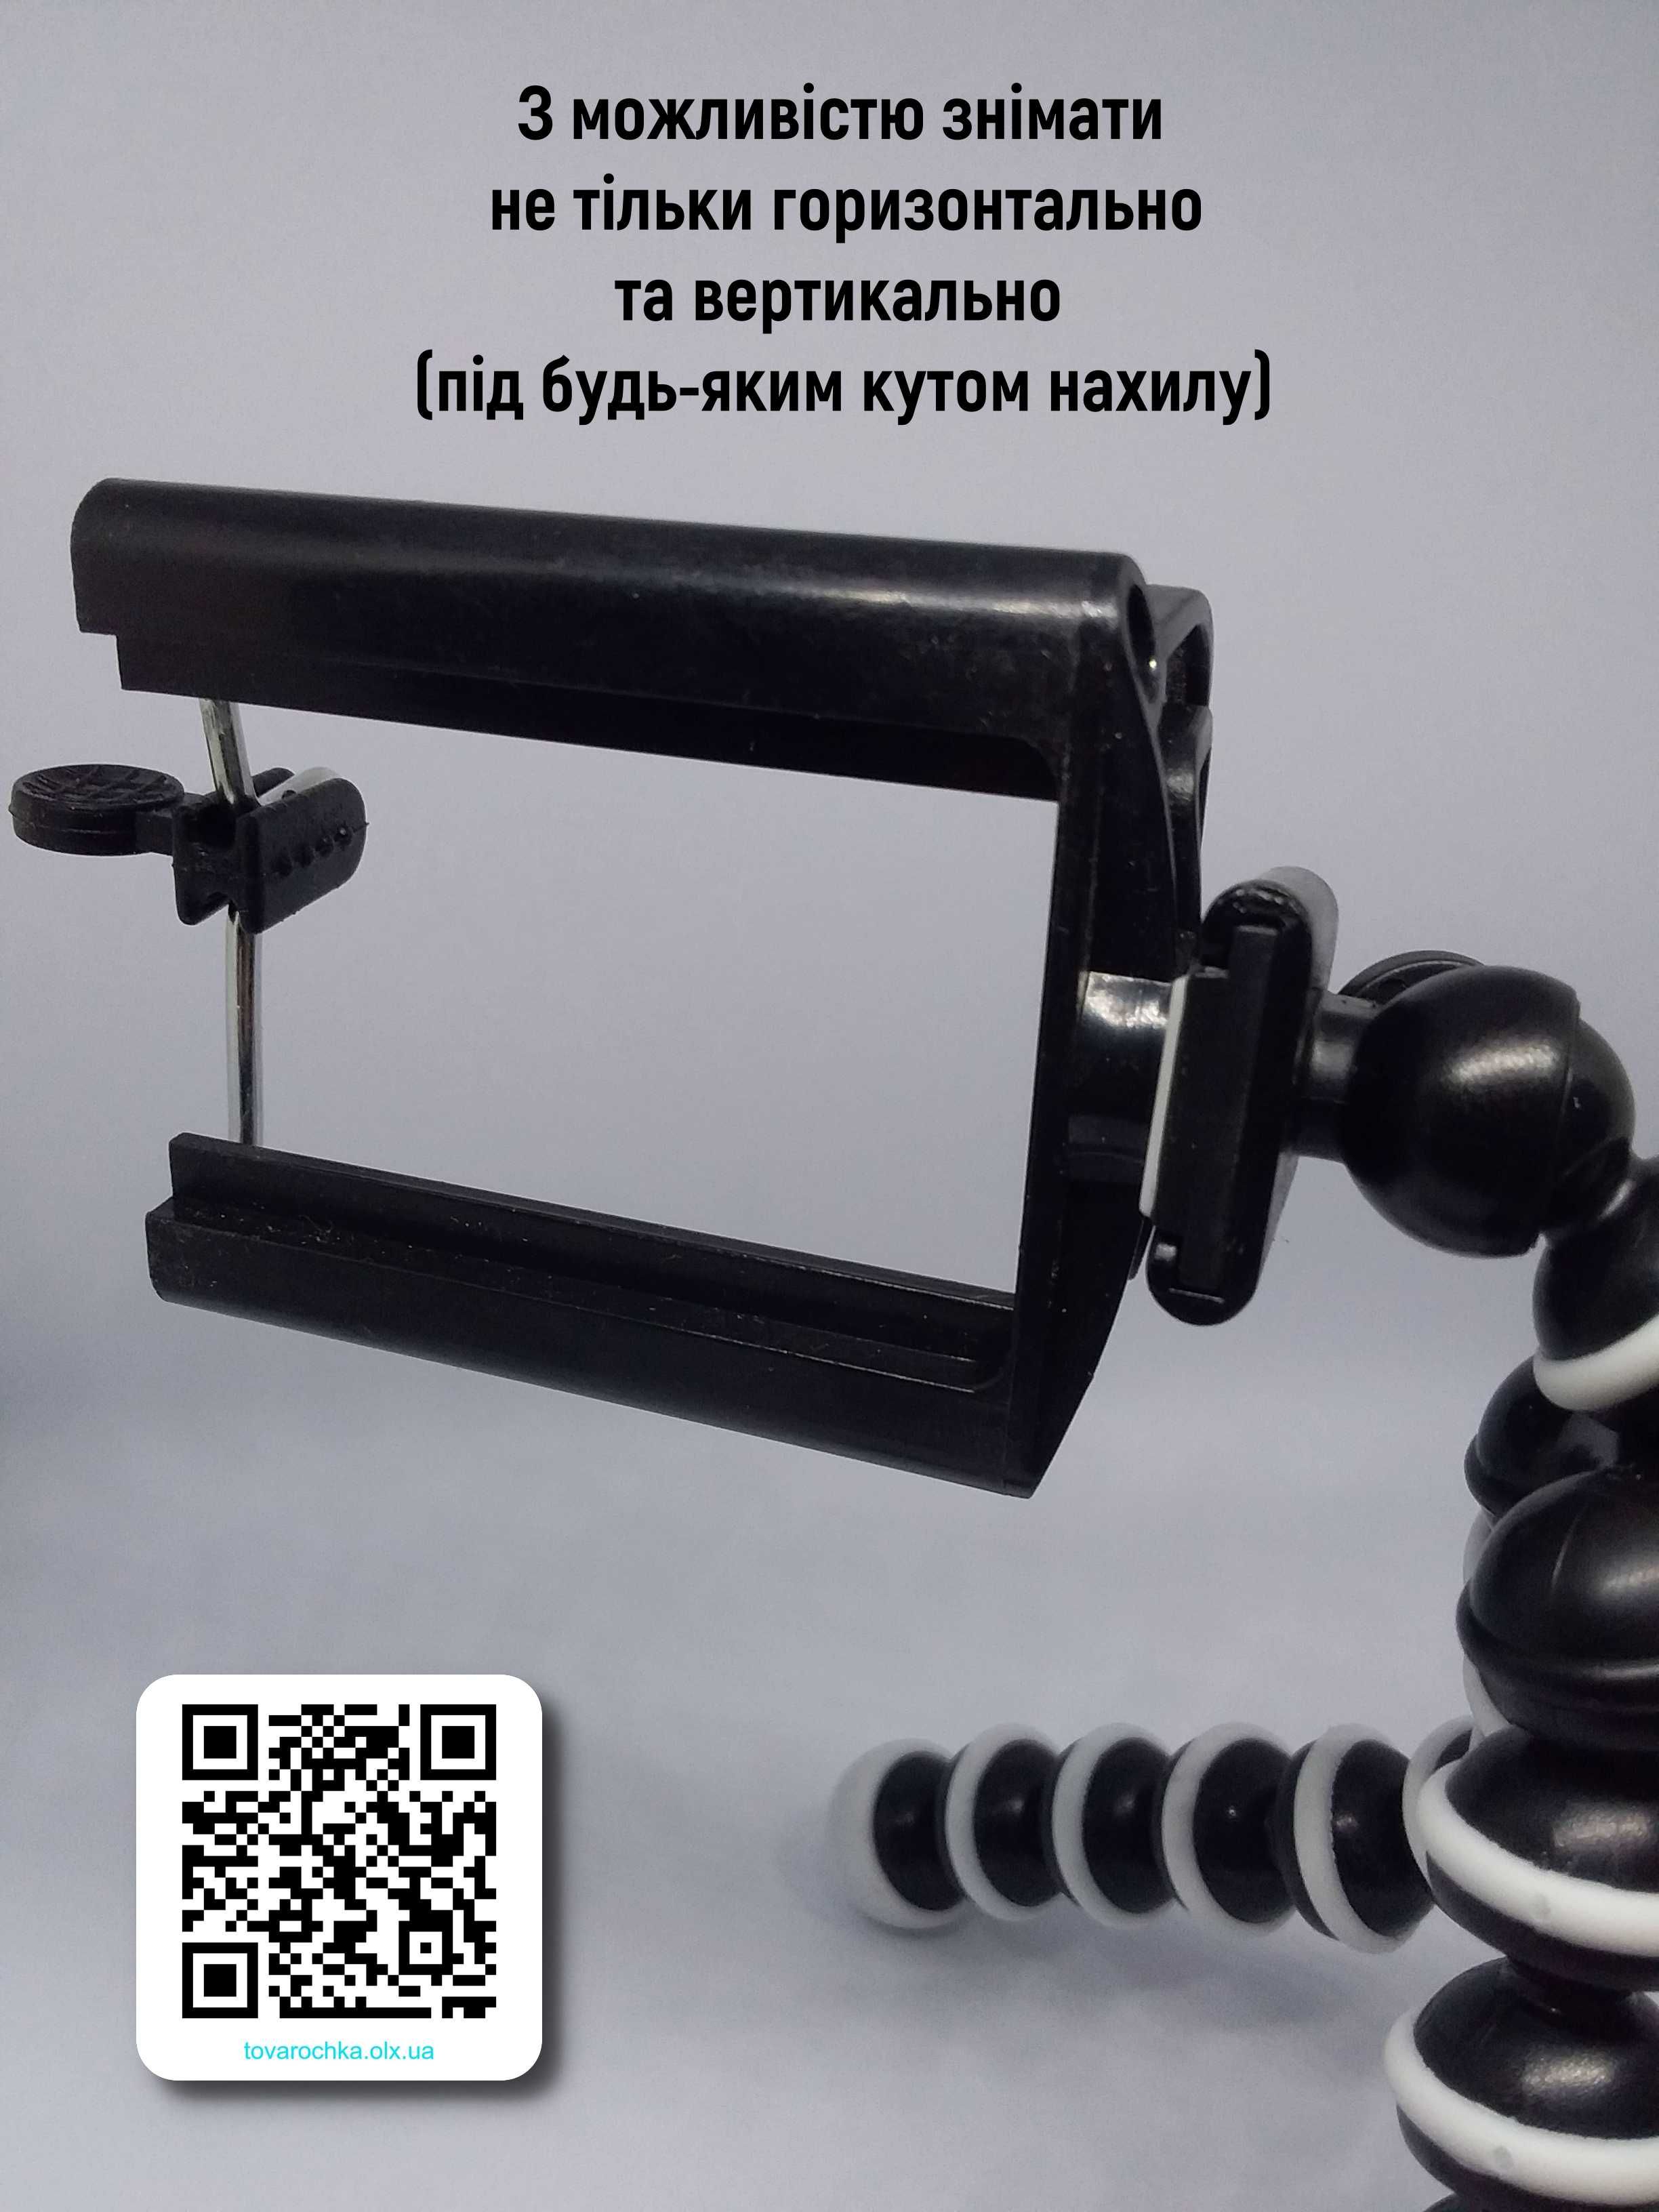 Качественный разборной гибкий миништатив "осьминог" купить в Украине